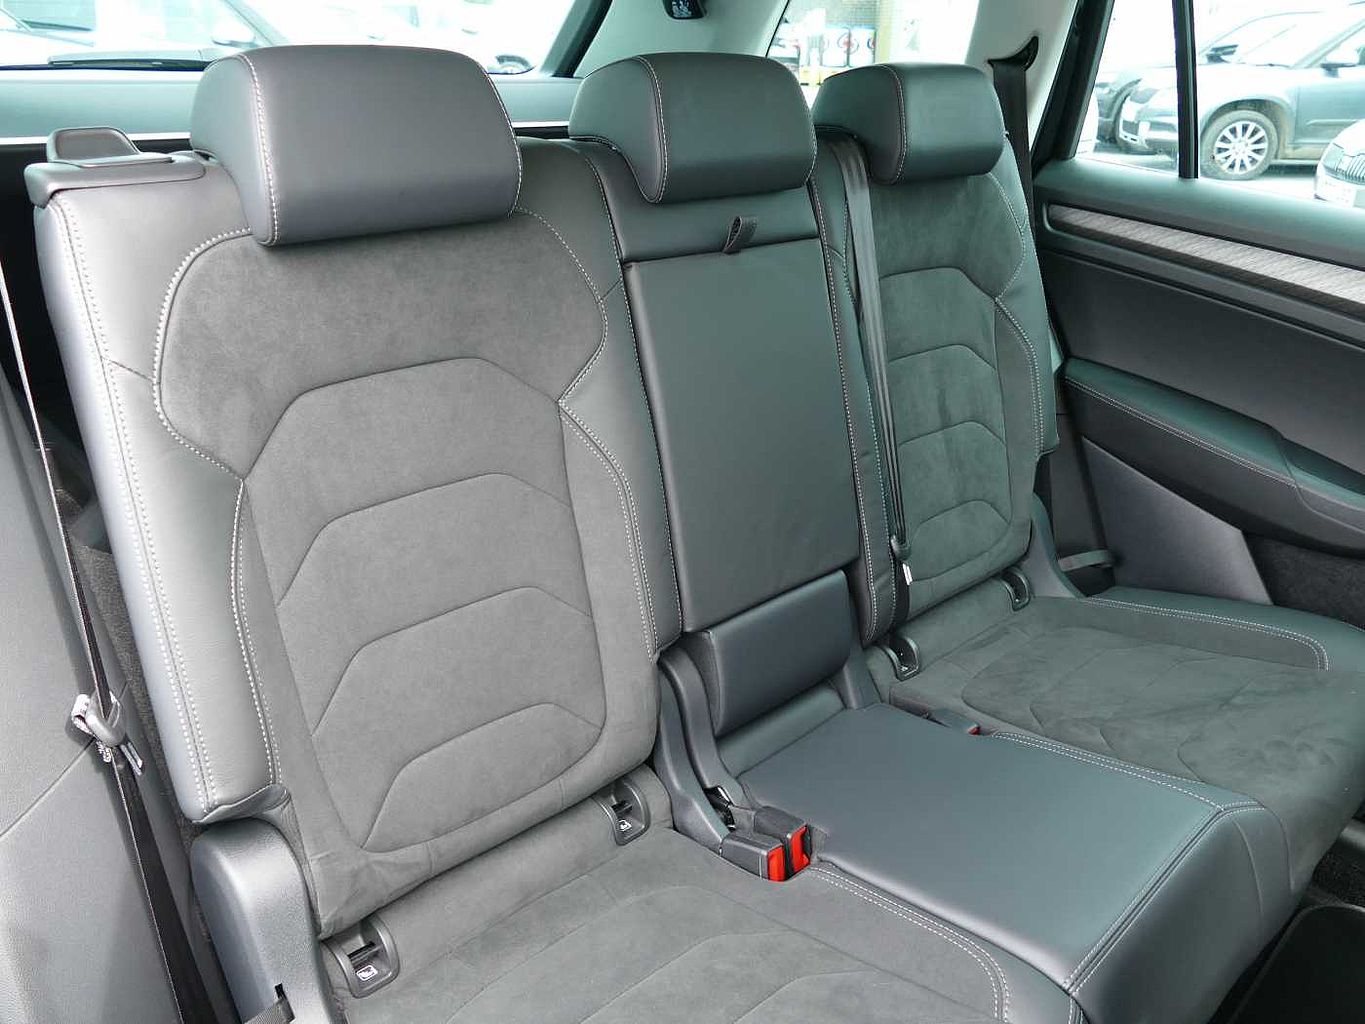 SKODA Kodiaq 2.0 TSI (190ps) 4X4 SE L (7 seats) DSG SUV